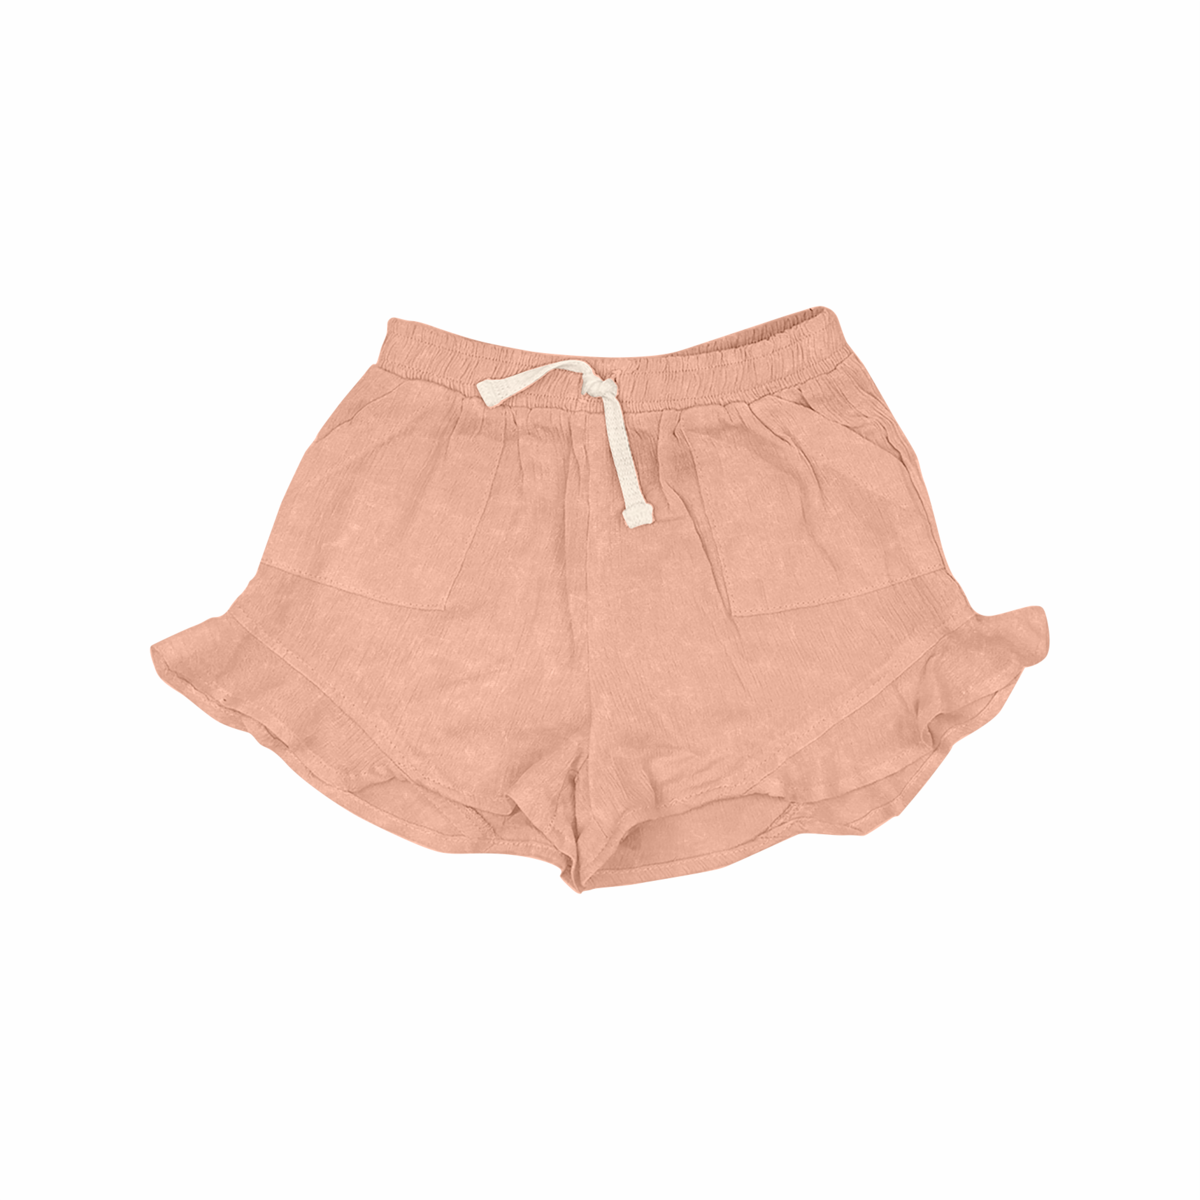 Sedona Butterfly Shorts